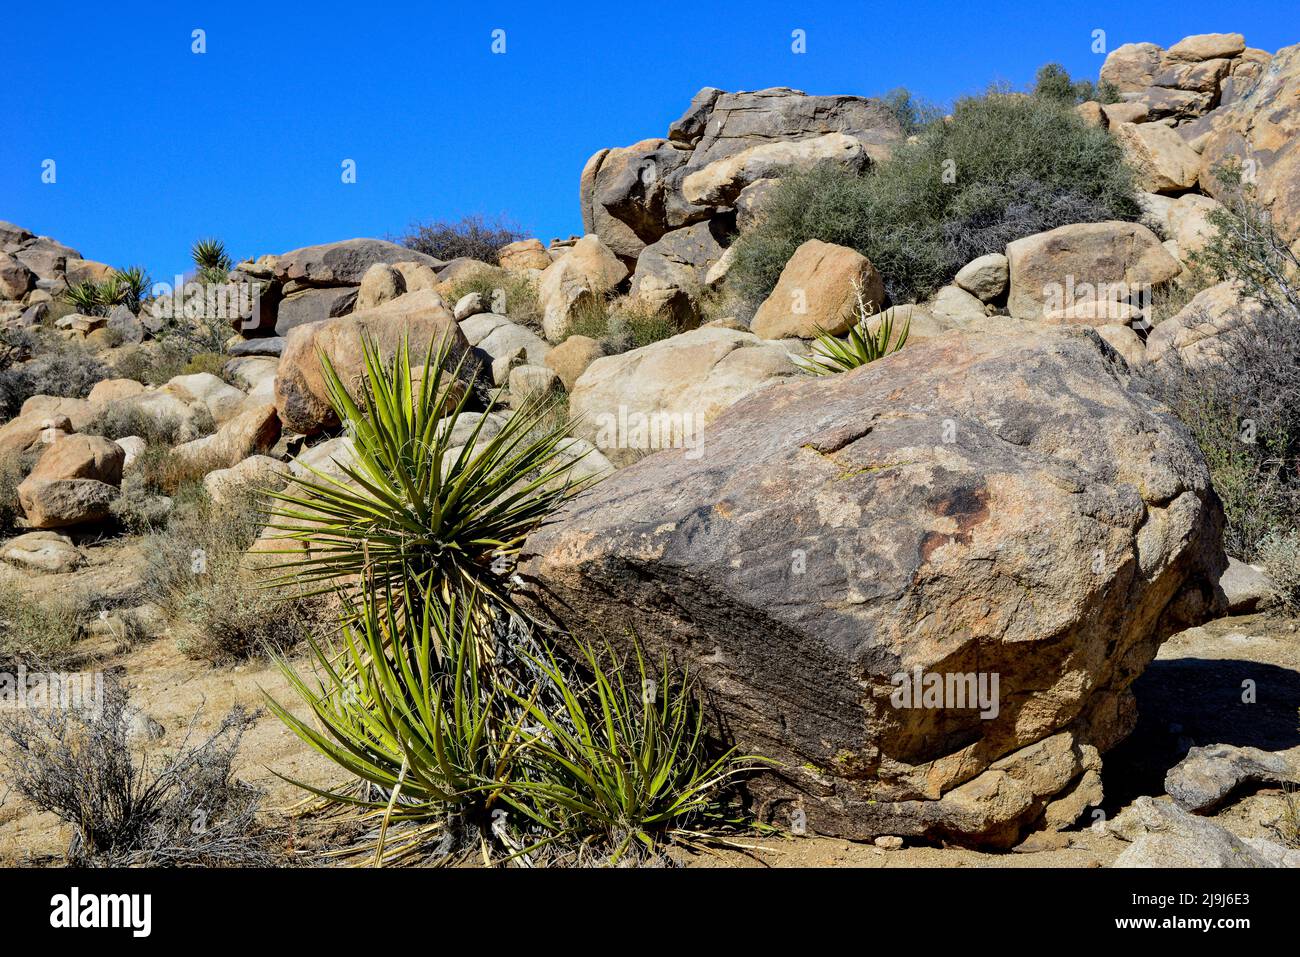 Le parc national unique de Joshua Tree, parsemé de cactus et de yuccas, parmi les formations rocheuses des éruptions et de l'érosion, dans le désert de Mojave, en Californie Banque D'Images